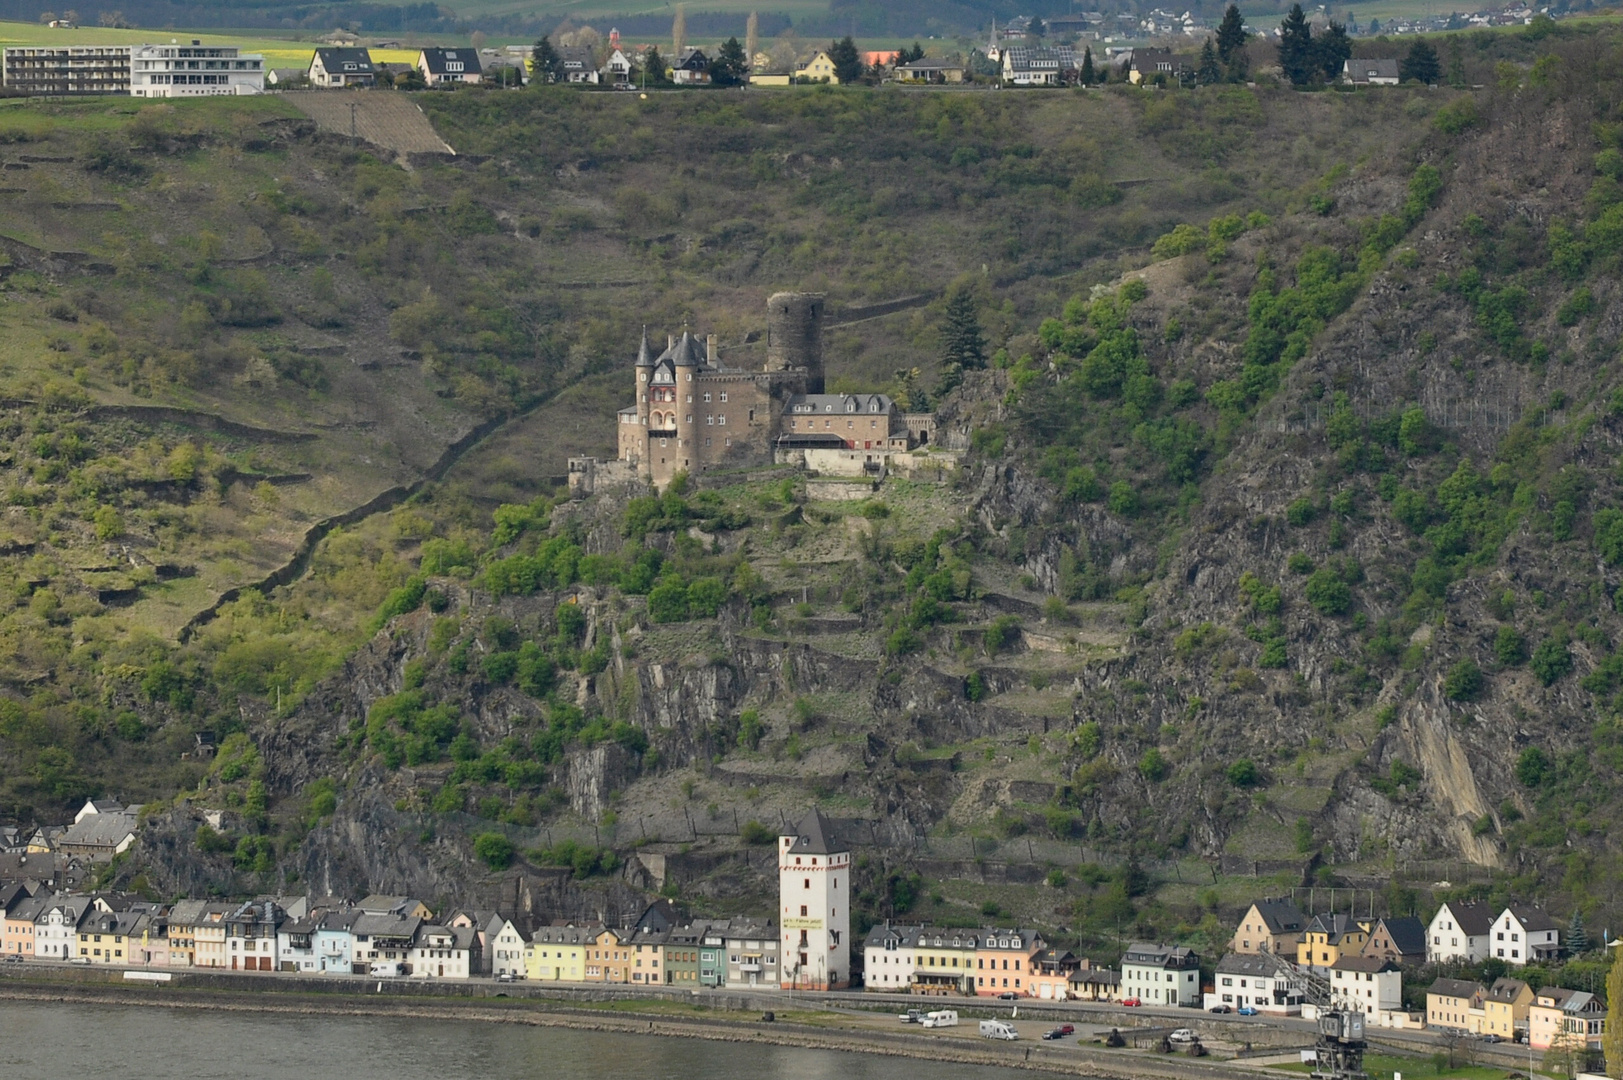 Burg Katz, Rhein